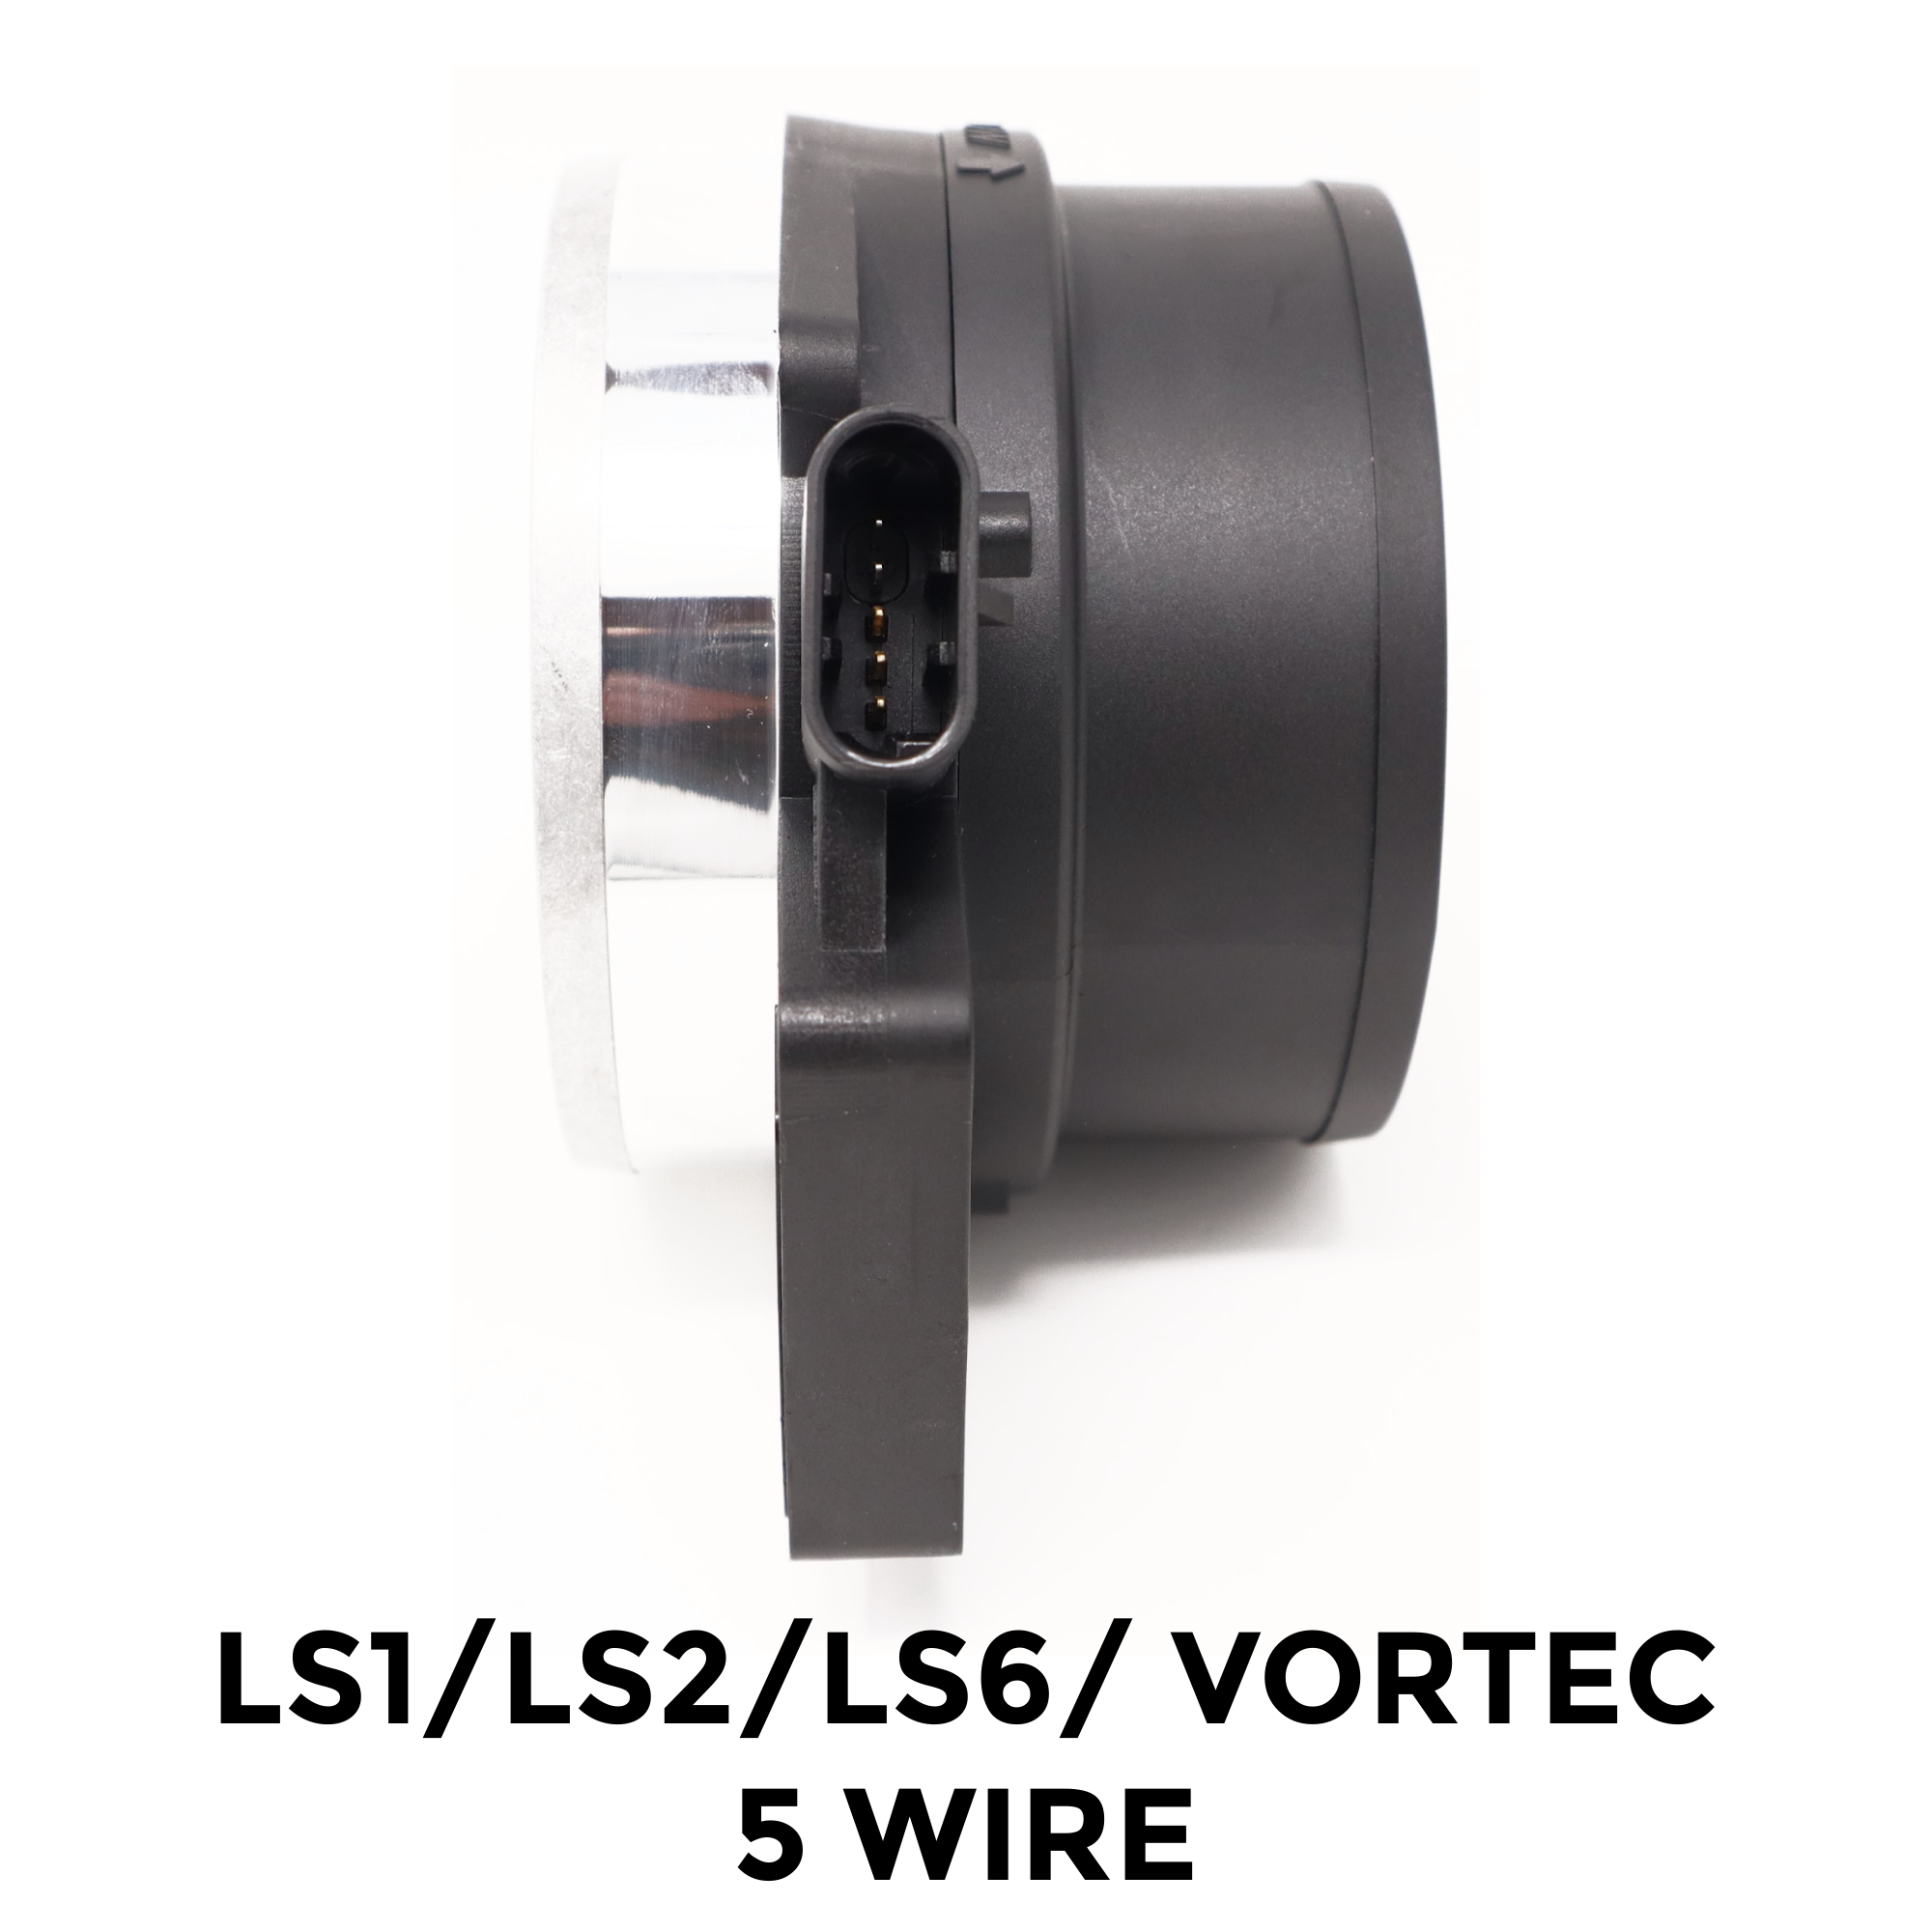 LS1/LS6/LS2/Vortec 5 Wire $0.00